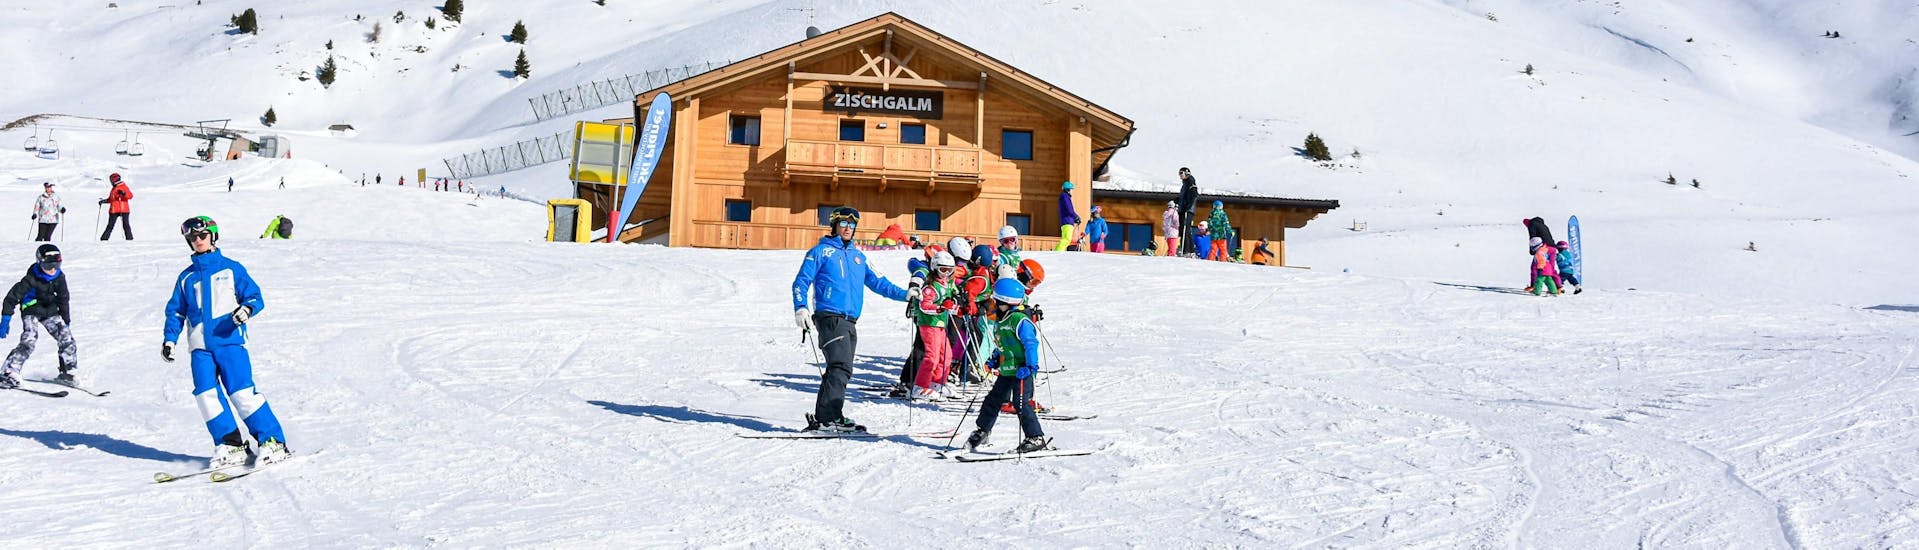 Lezioni di sci per bambini (6-14 anni) - Full Day.